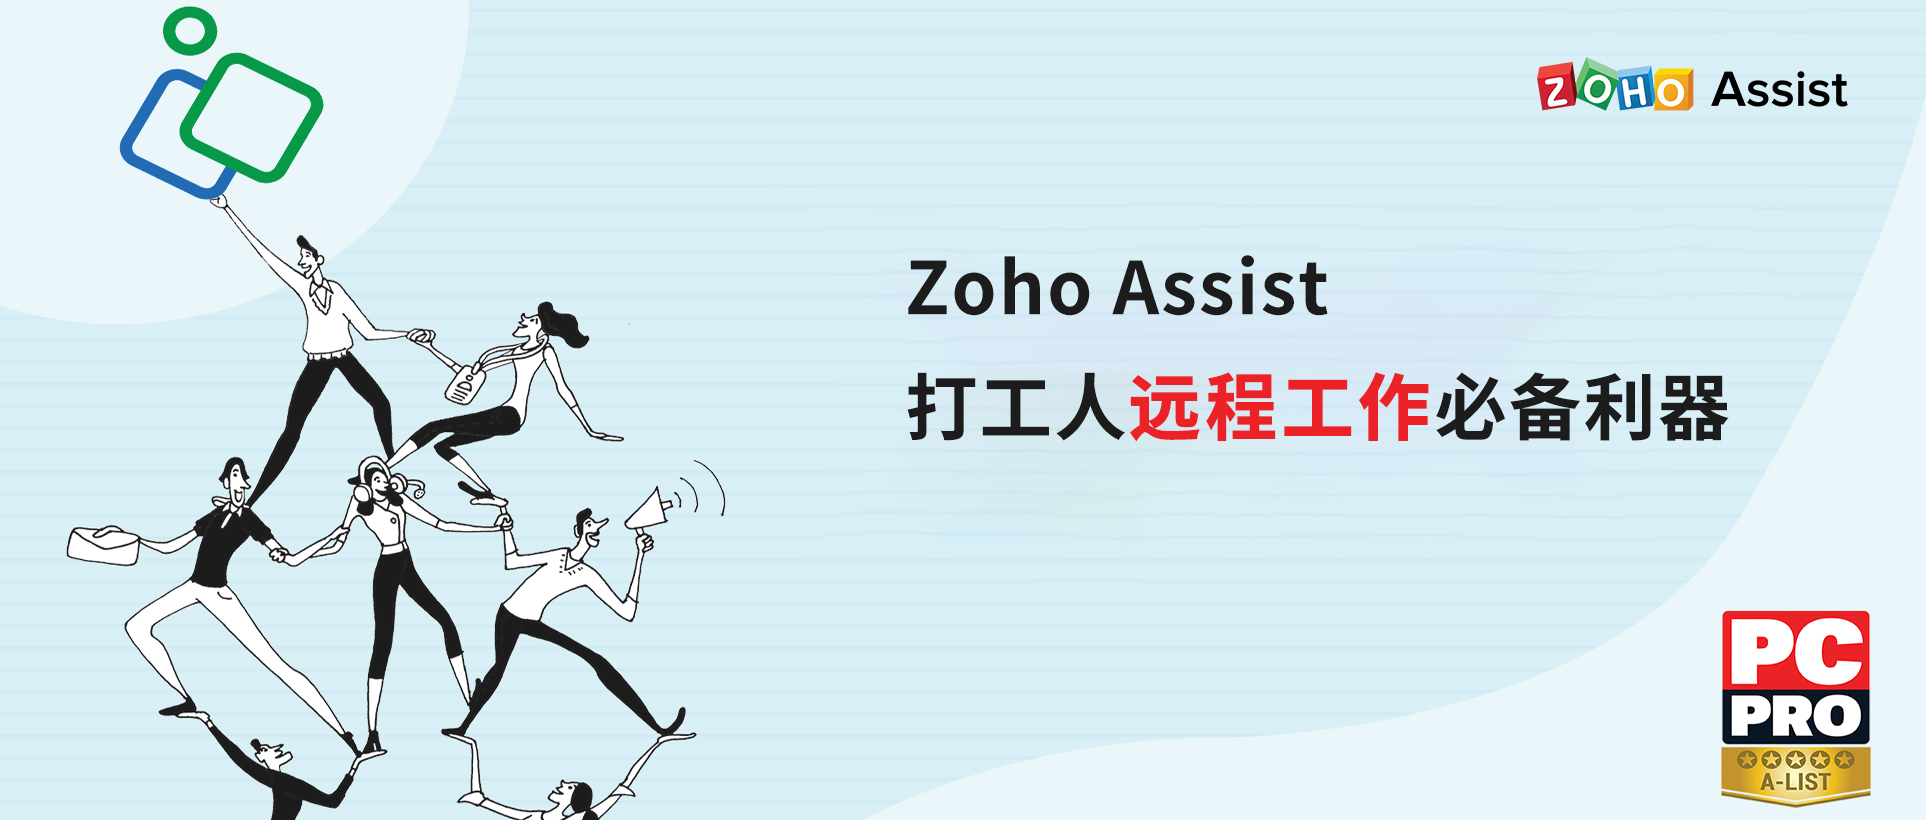 远程协作能力再获认可！Zoho Assist被PC Pro杂志评为A级产品